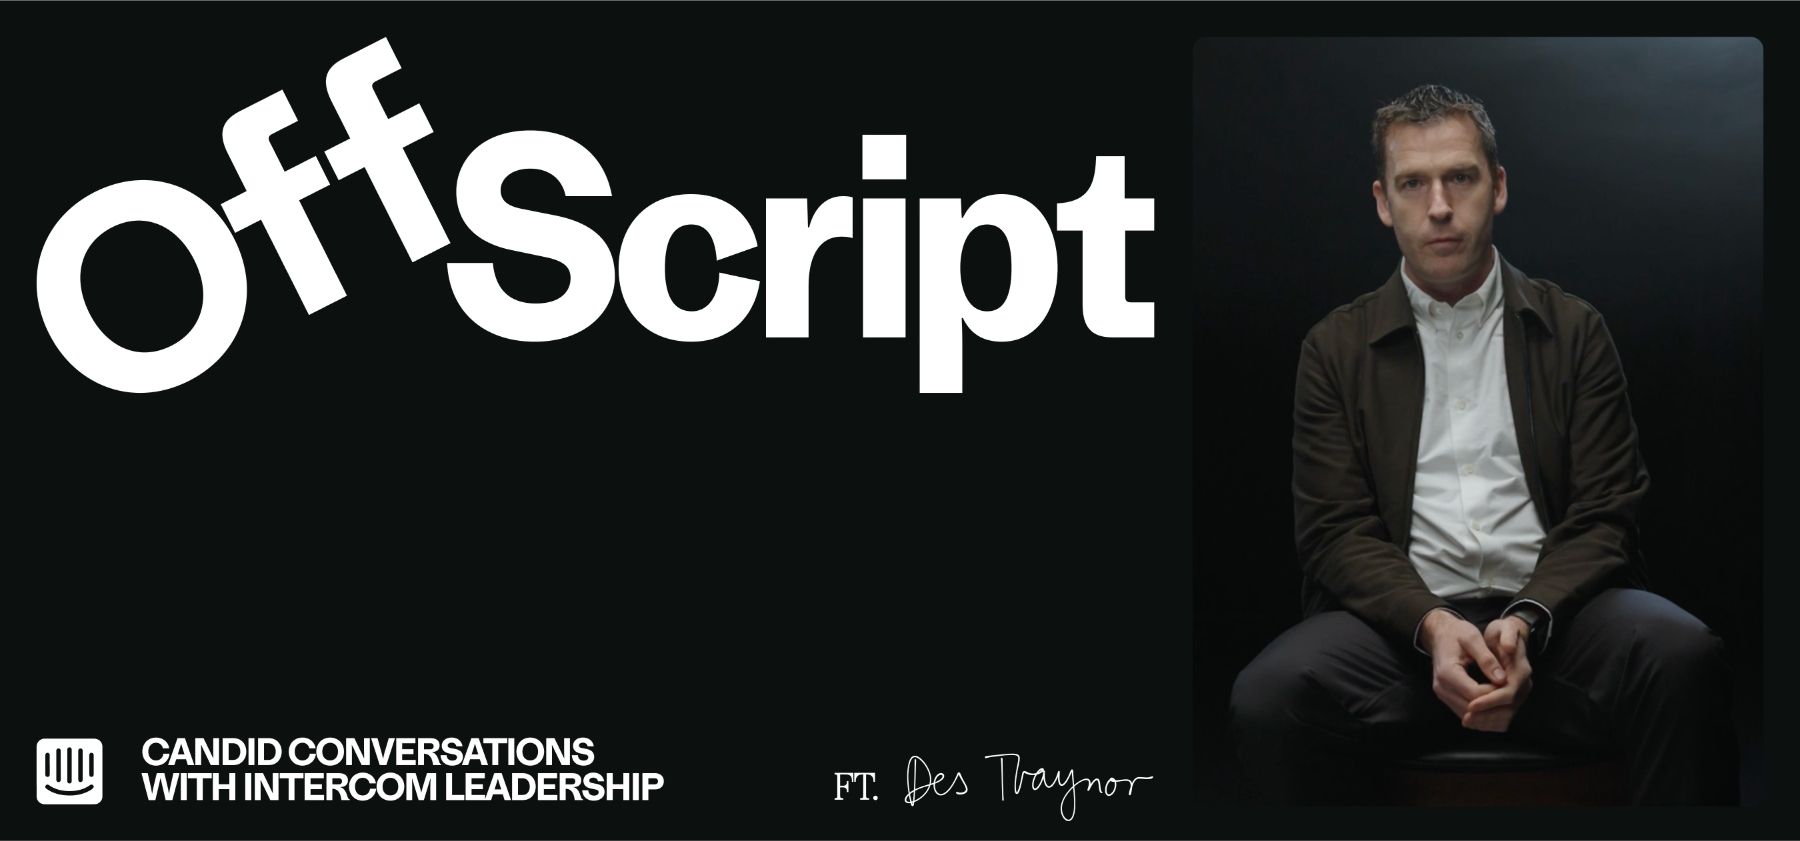 Wir stellen „Off Script“ vor, eine neue Intercom-Serie